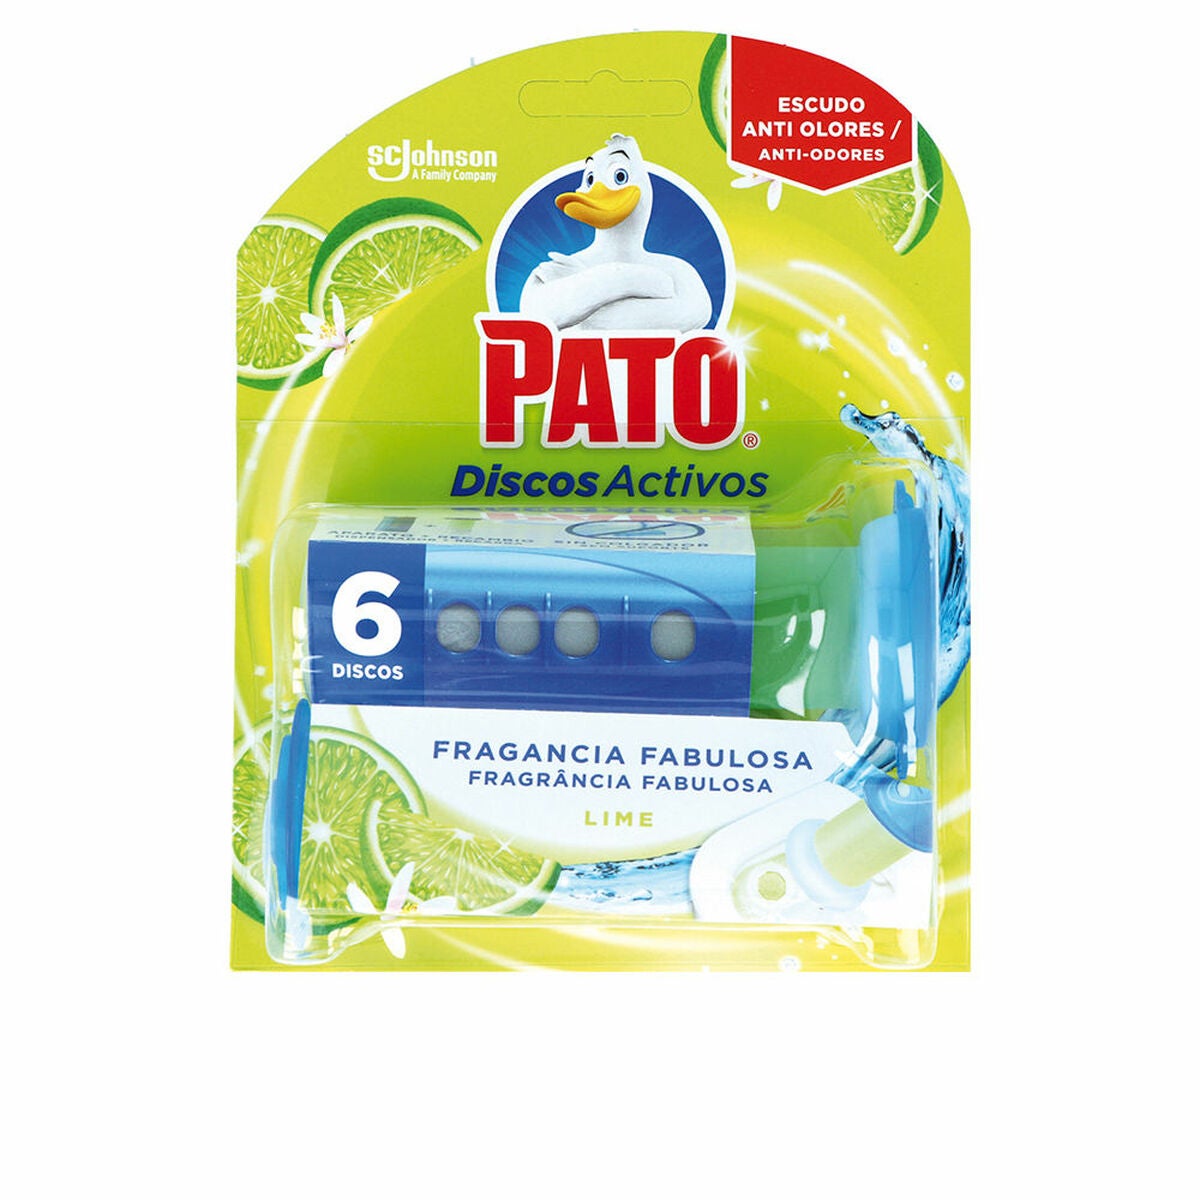 Ambientador de inodoro Pato Discos Activos Lima 6 Unidades Desinfectante  5000204966558 S05109174 Pato